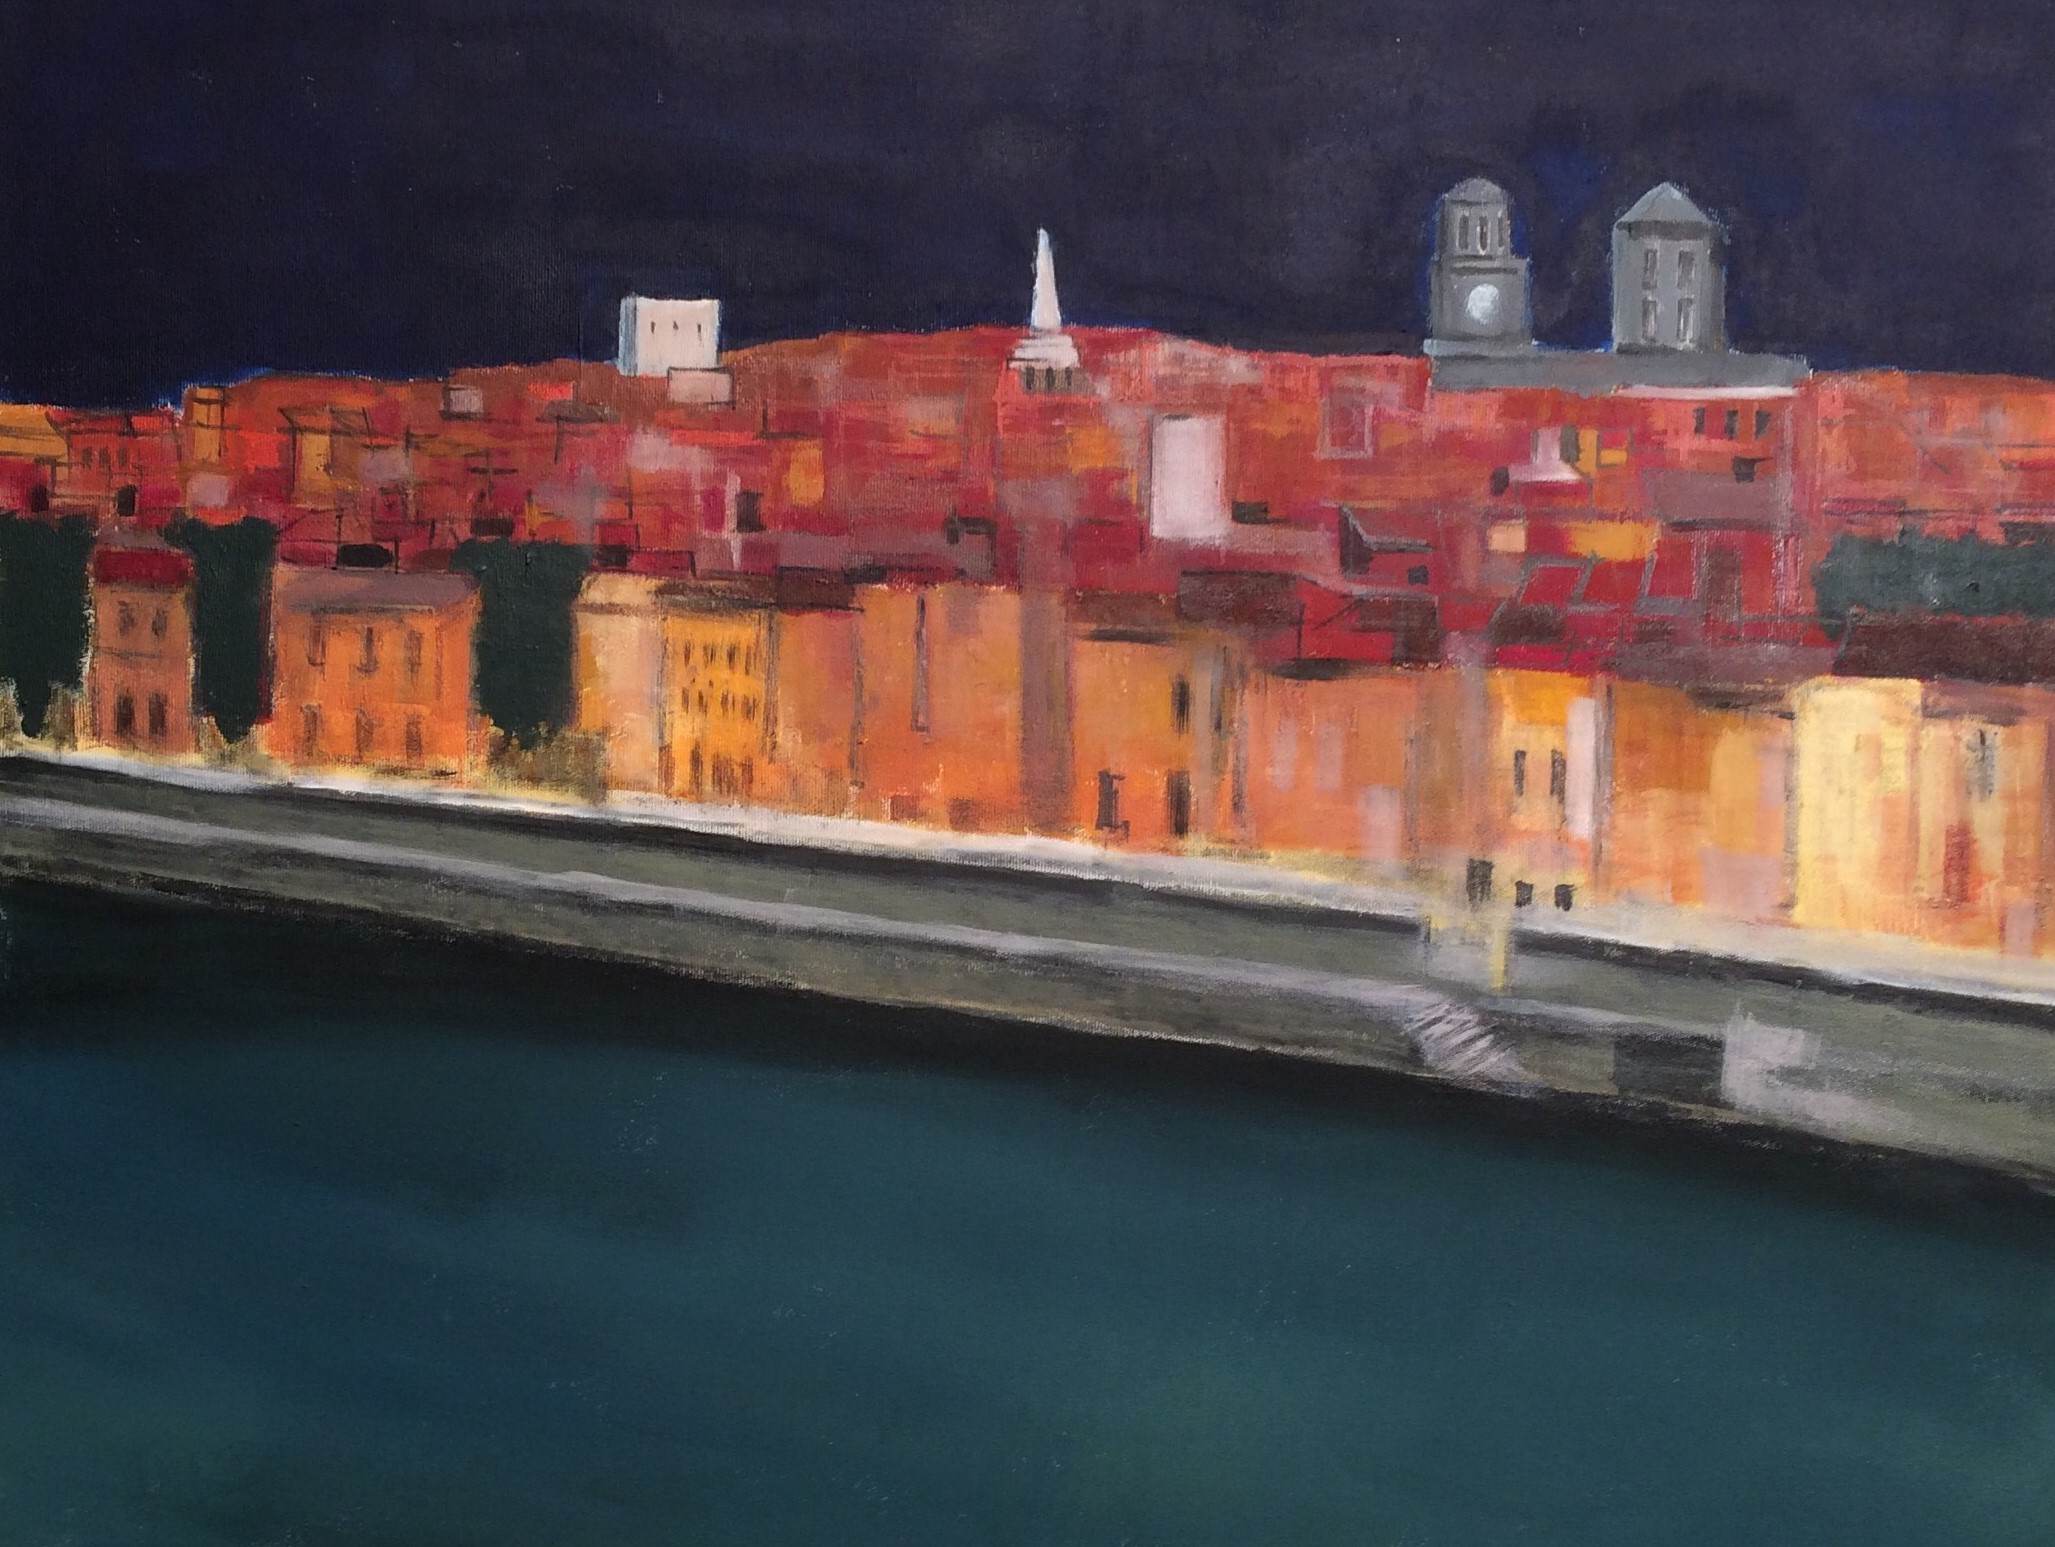 N°3283 - Arles rive gauche - Acrylique et pigments sur toile - 89 x 116 cm - 28 avril 2017